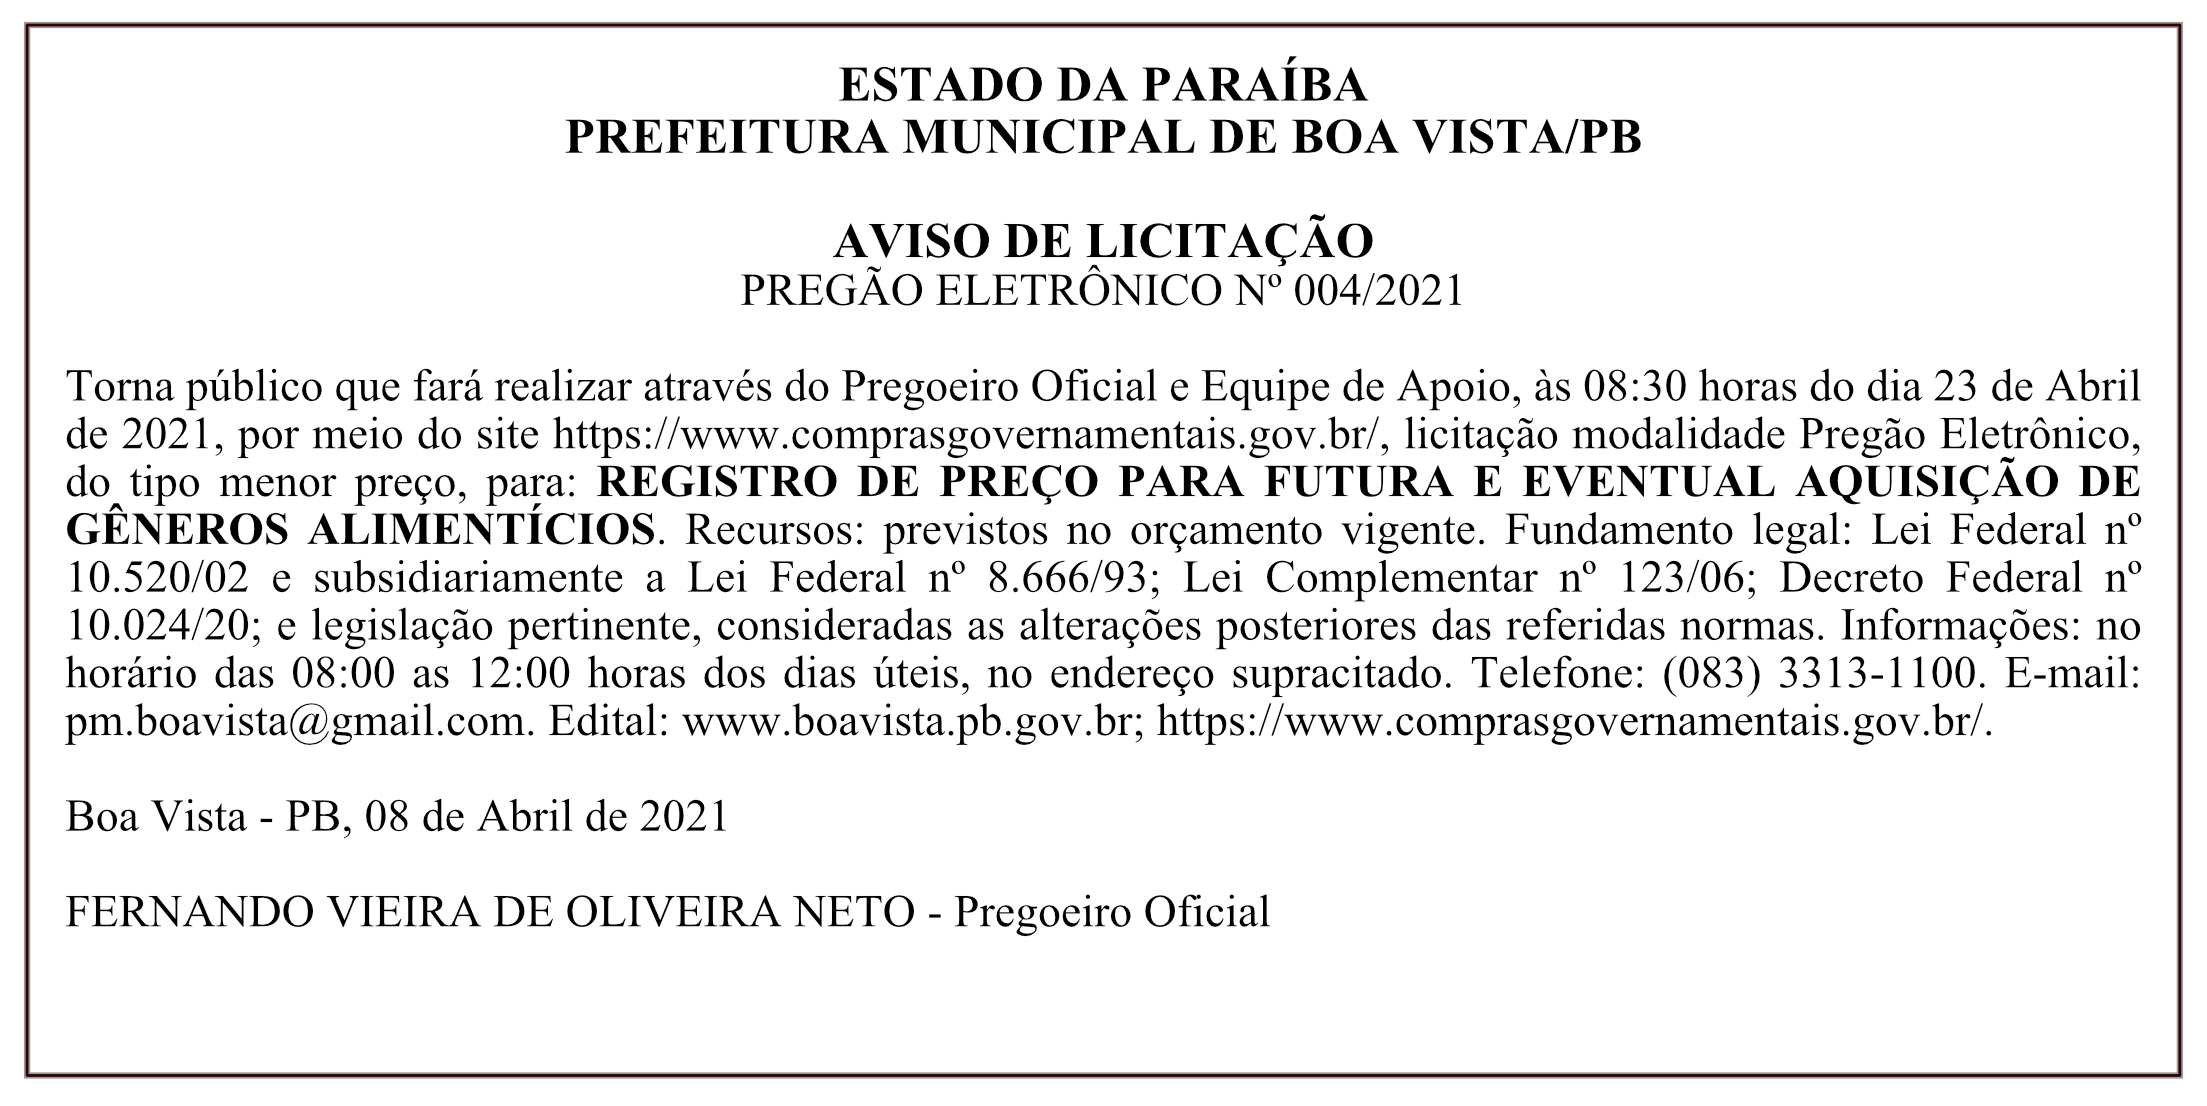 PREFEITURA MUNICIPAL DE BOA VISTA – AVISO DE LICITAÇÃO – PREGÃO ELETRÔNICO Nº 004/2021